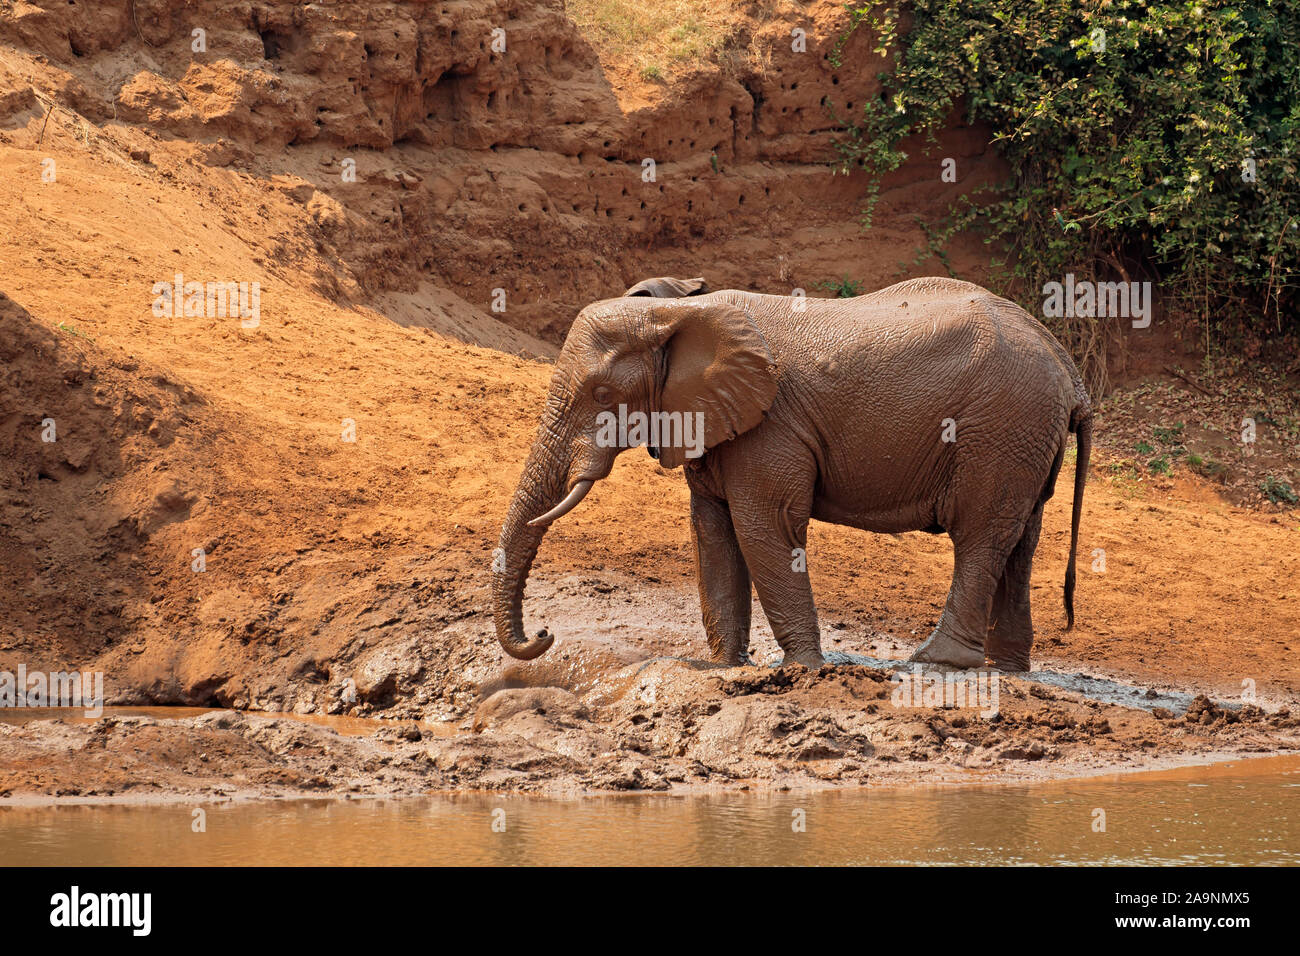 Elefante africano (Loxodonta africana), cubierto de barro, el Parque Nacional Kruger, Sudáfrica Foto de stock